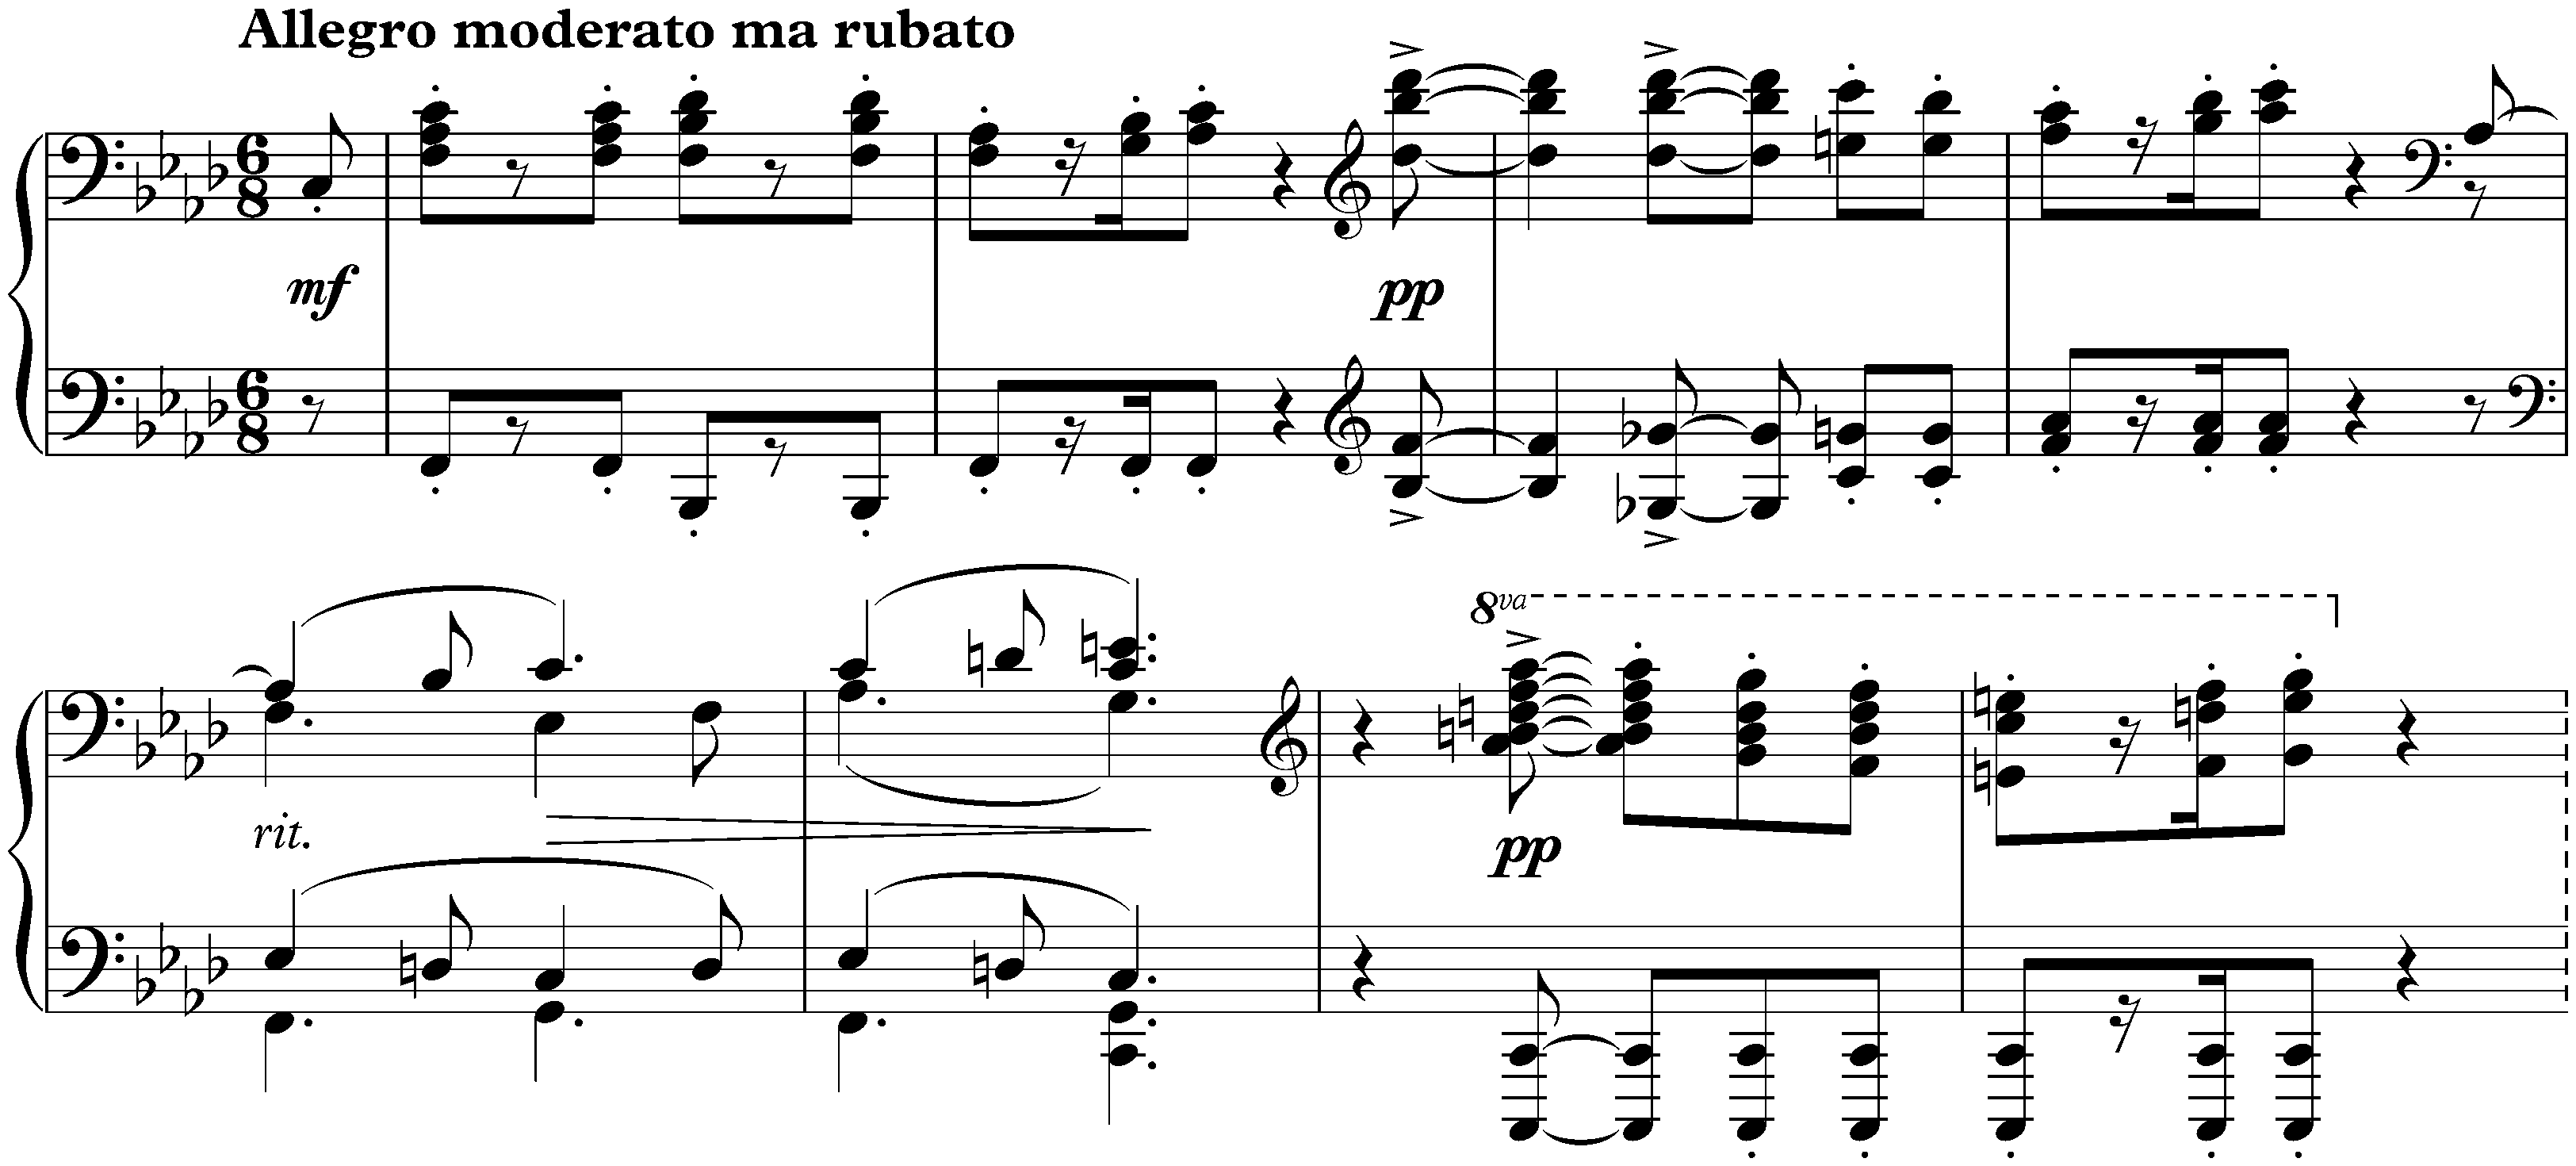 Sonata no. 3 in F minor, op. 5; 5. Finale: Allegro moderato ma rubato